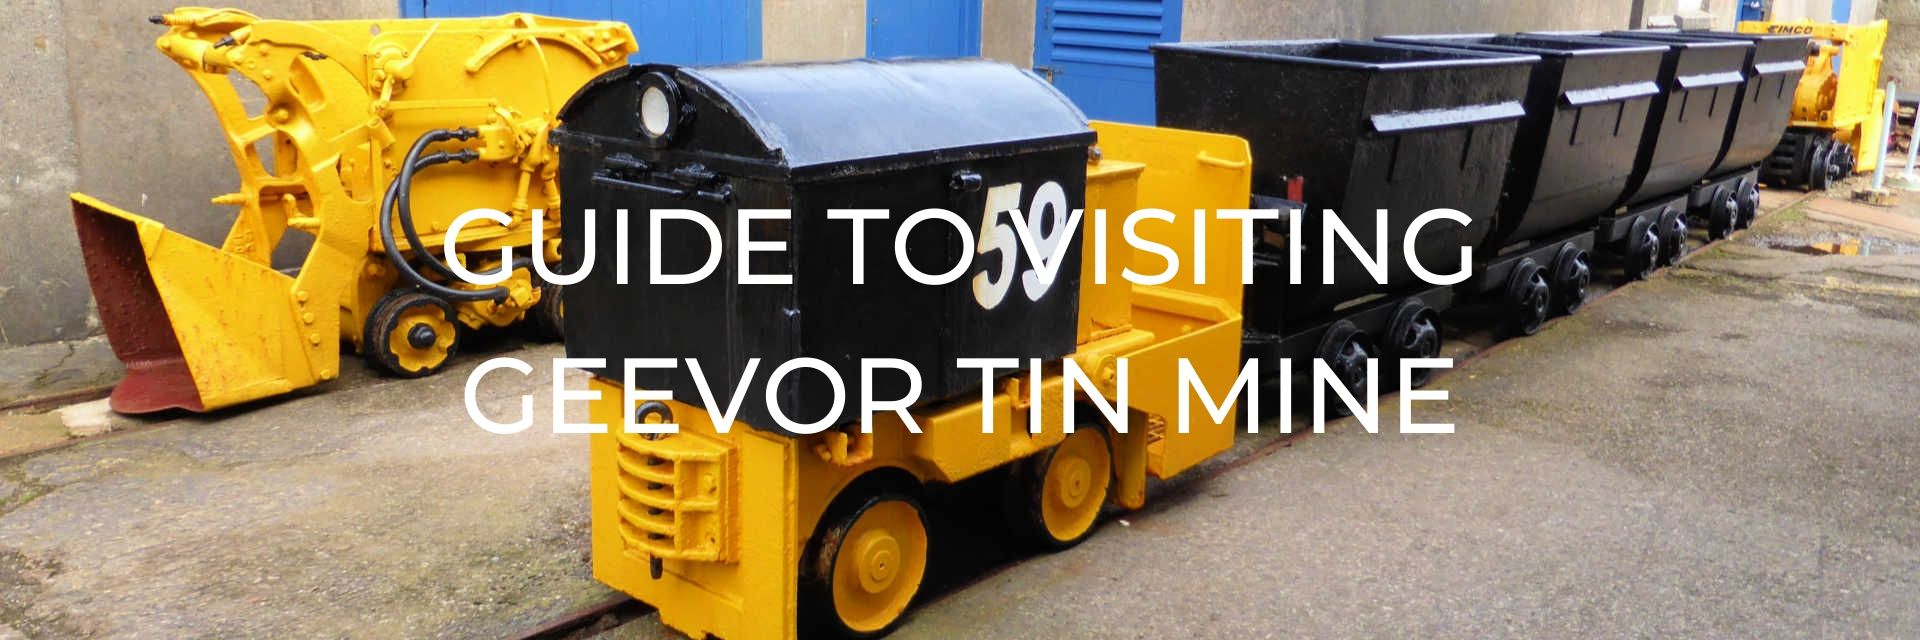 Guide to Visiting Geevor Tin Mine Desktop Image